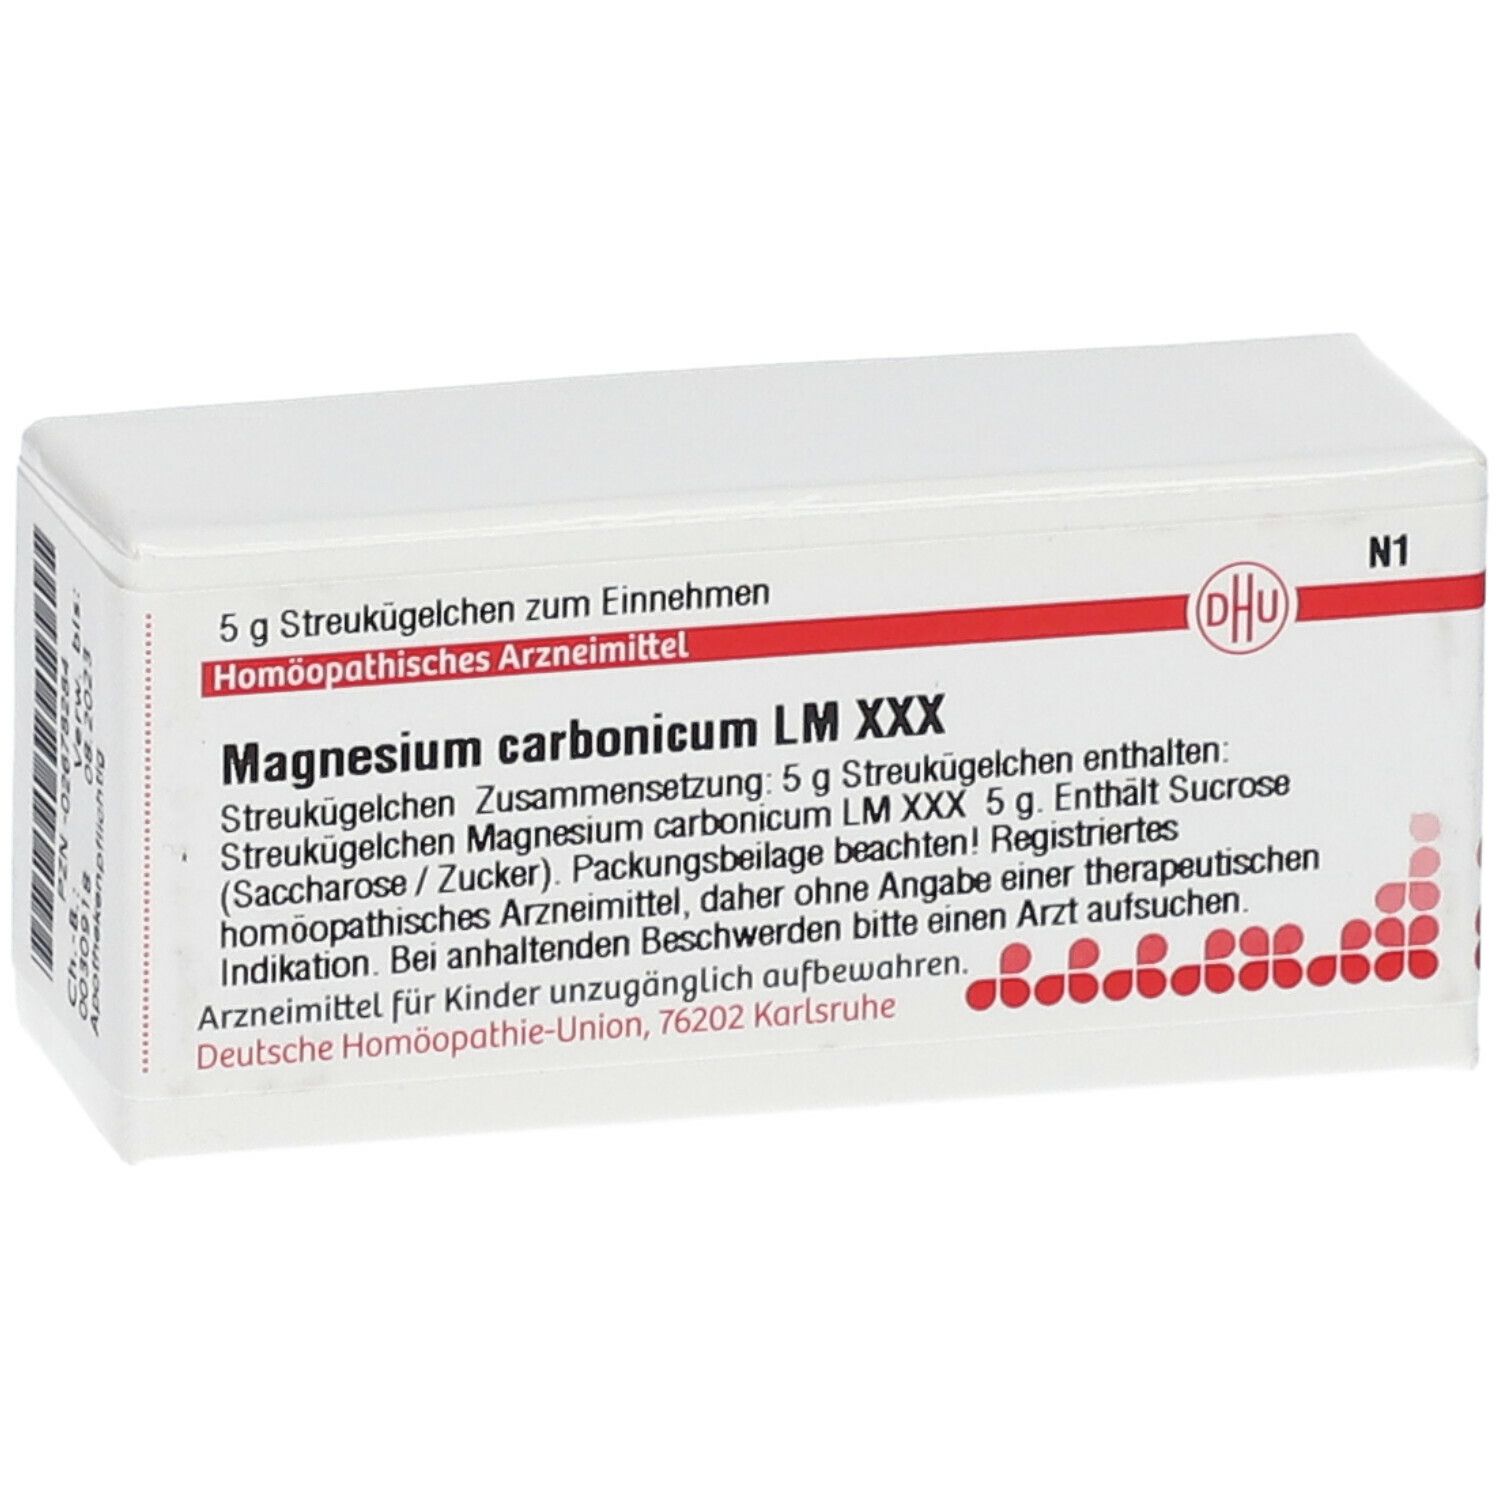 DHU Magnesium Carbonicum LM XXX